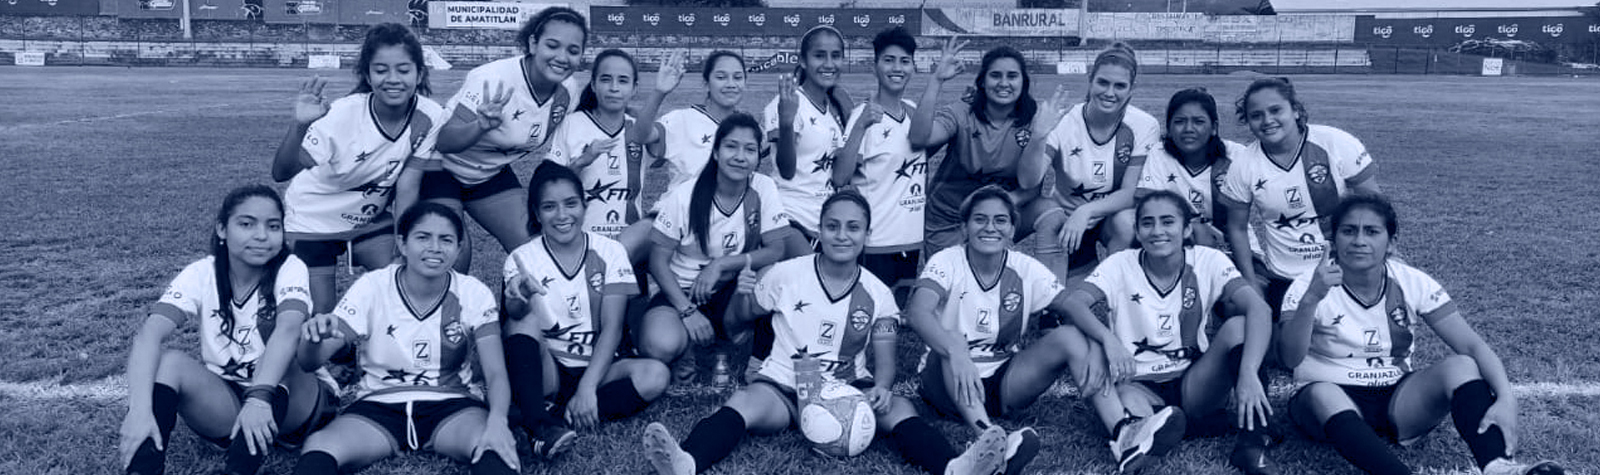 El Primer Equipo de Fútbol Femenil Sostenible de Latinoamérica